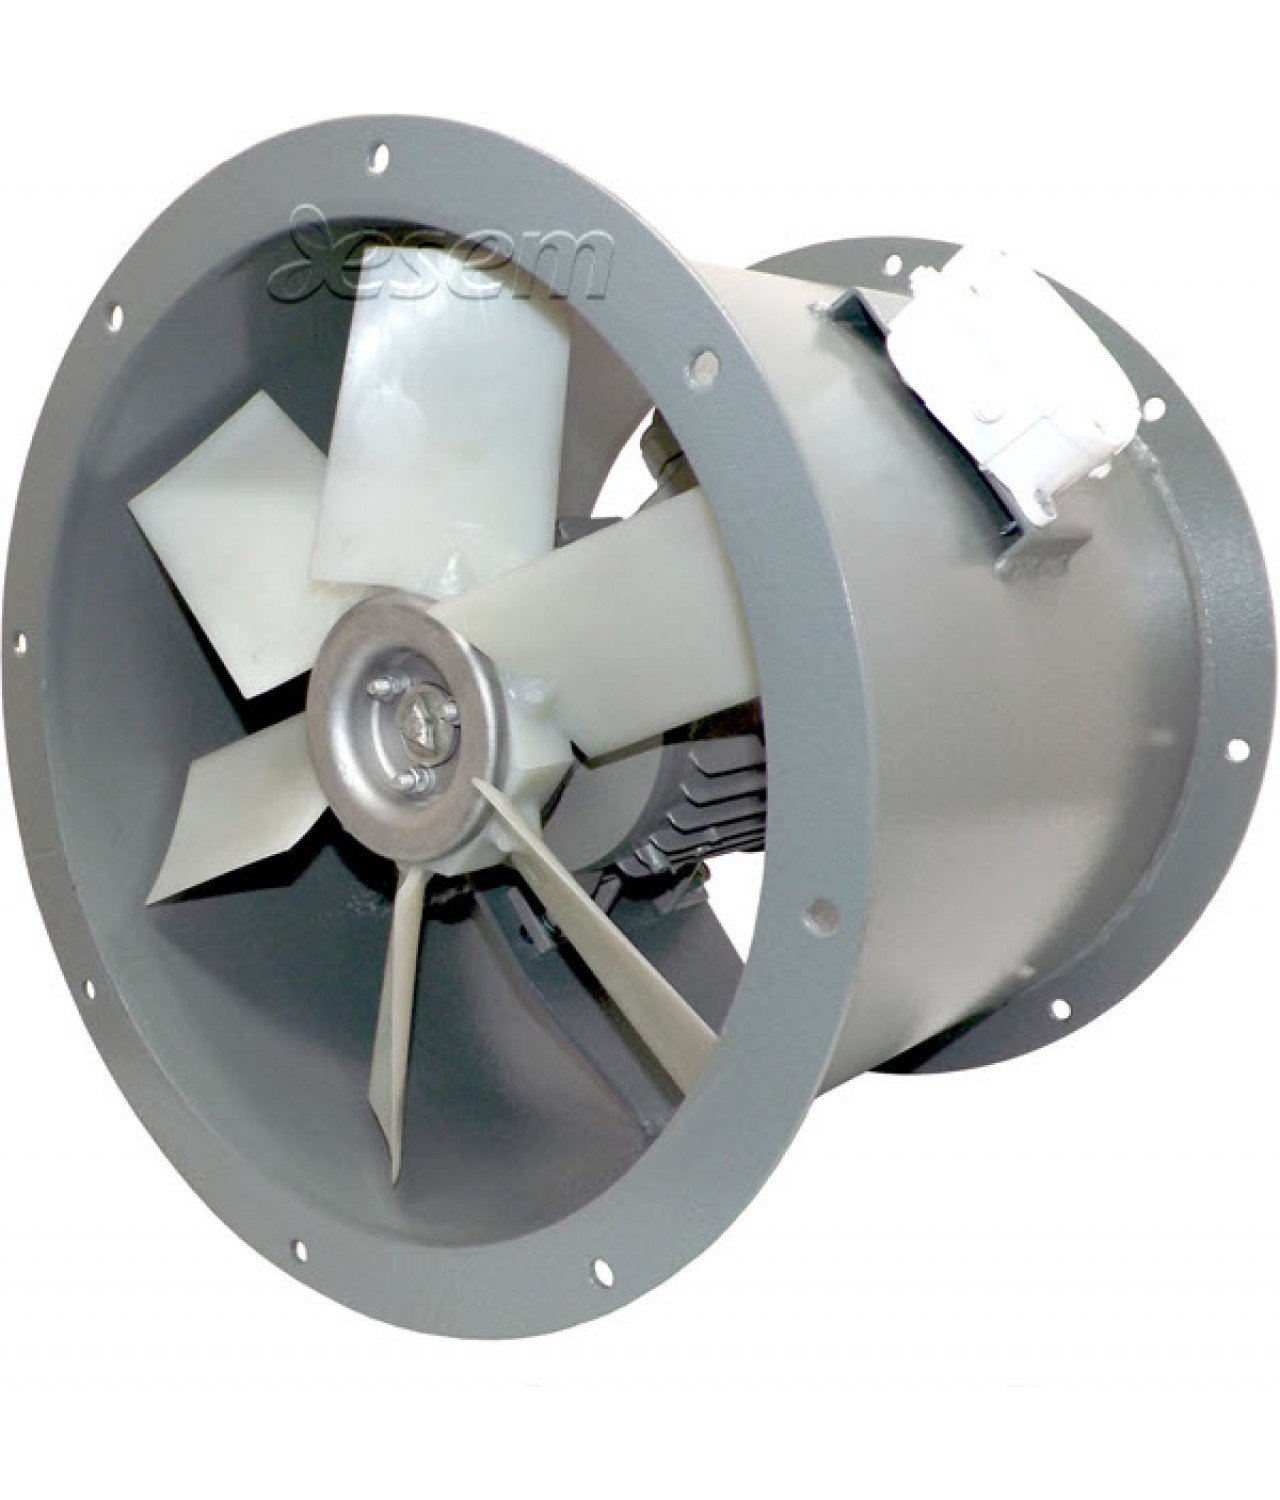 Padidintos galios ašiniai kanaliniai ventiliatoriai AVOFK ≤27000 m³/h